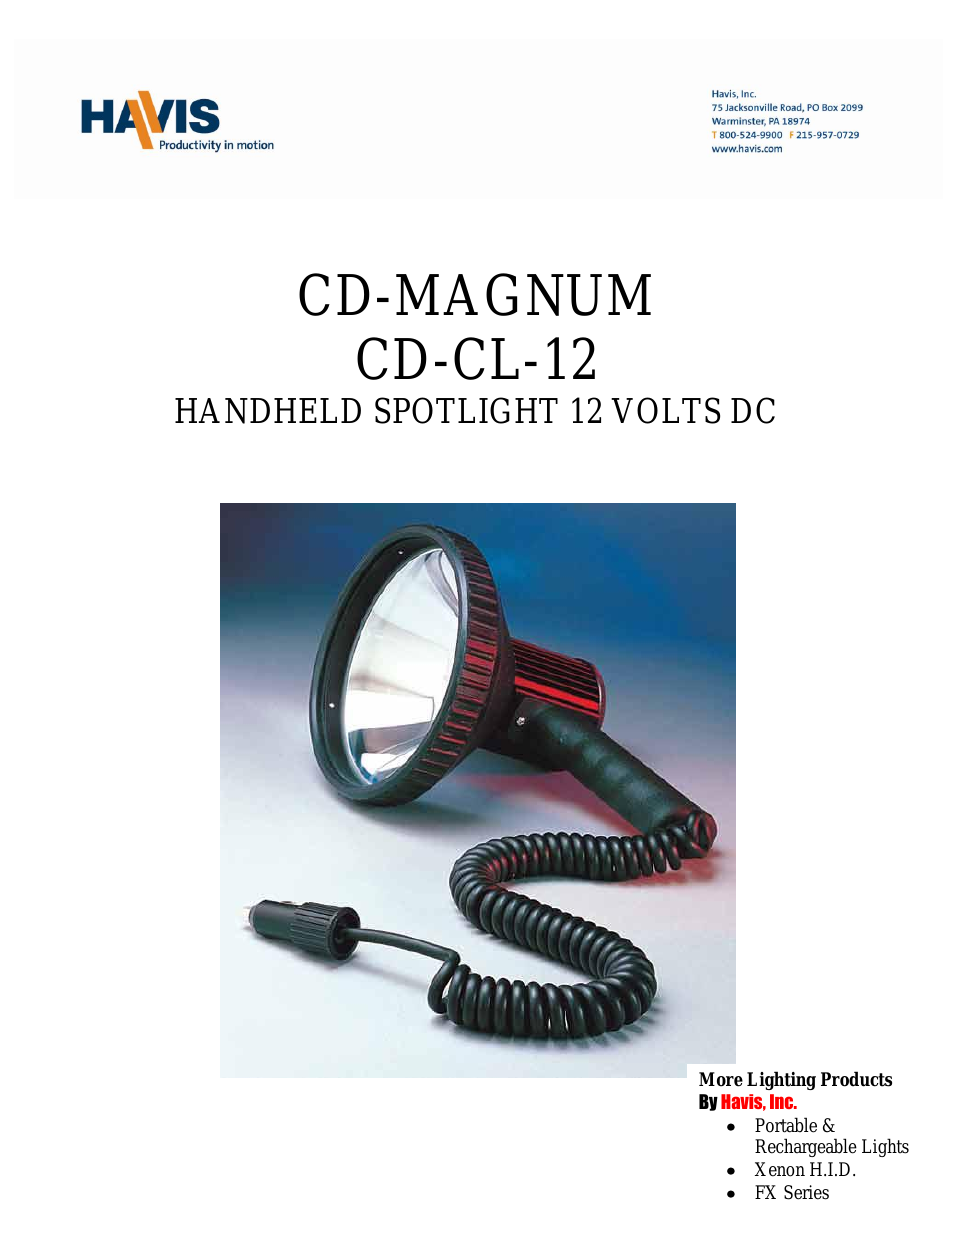 CD-MAGNUM CD-CL-12